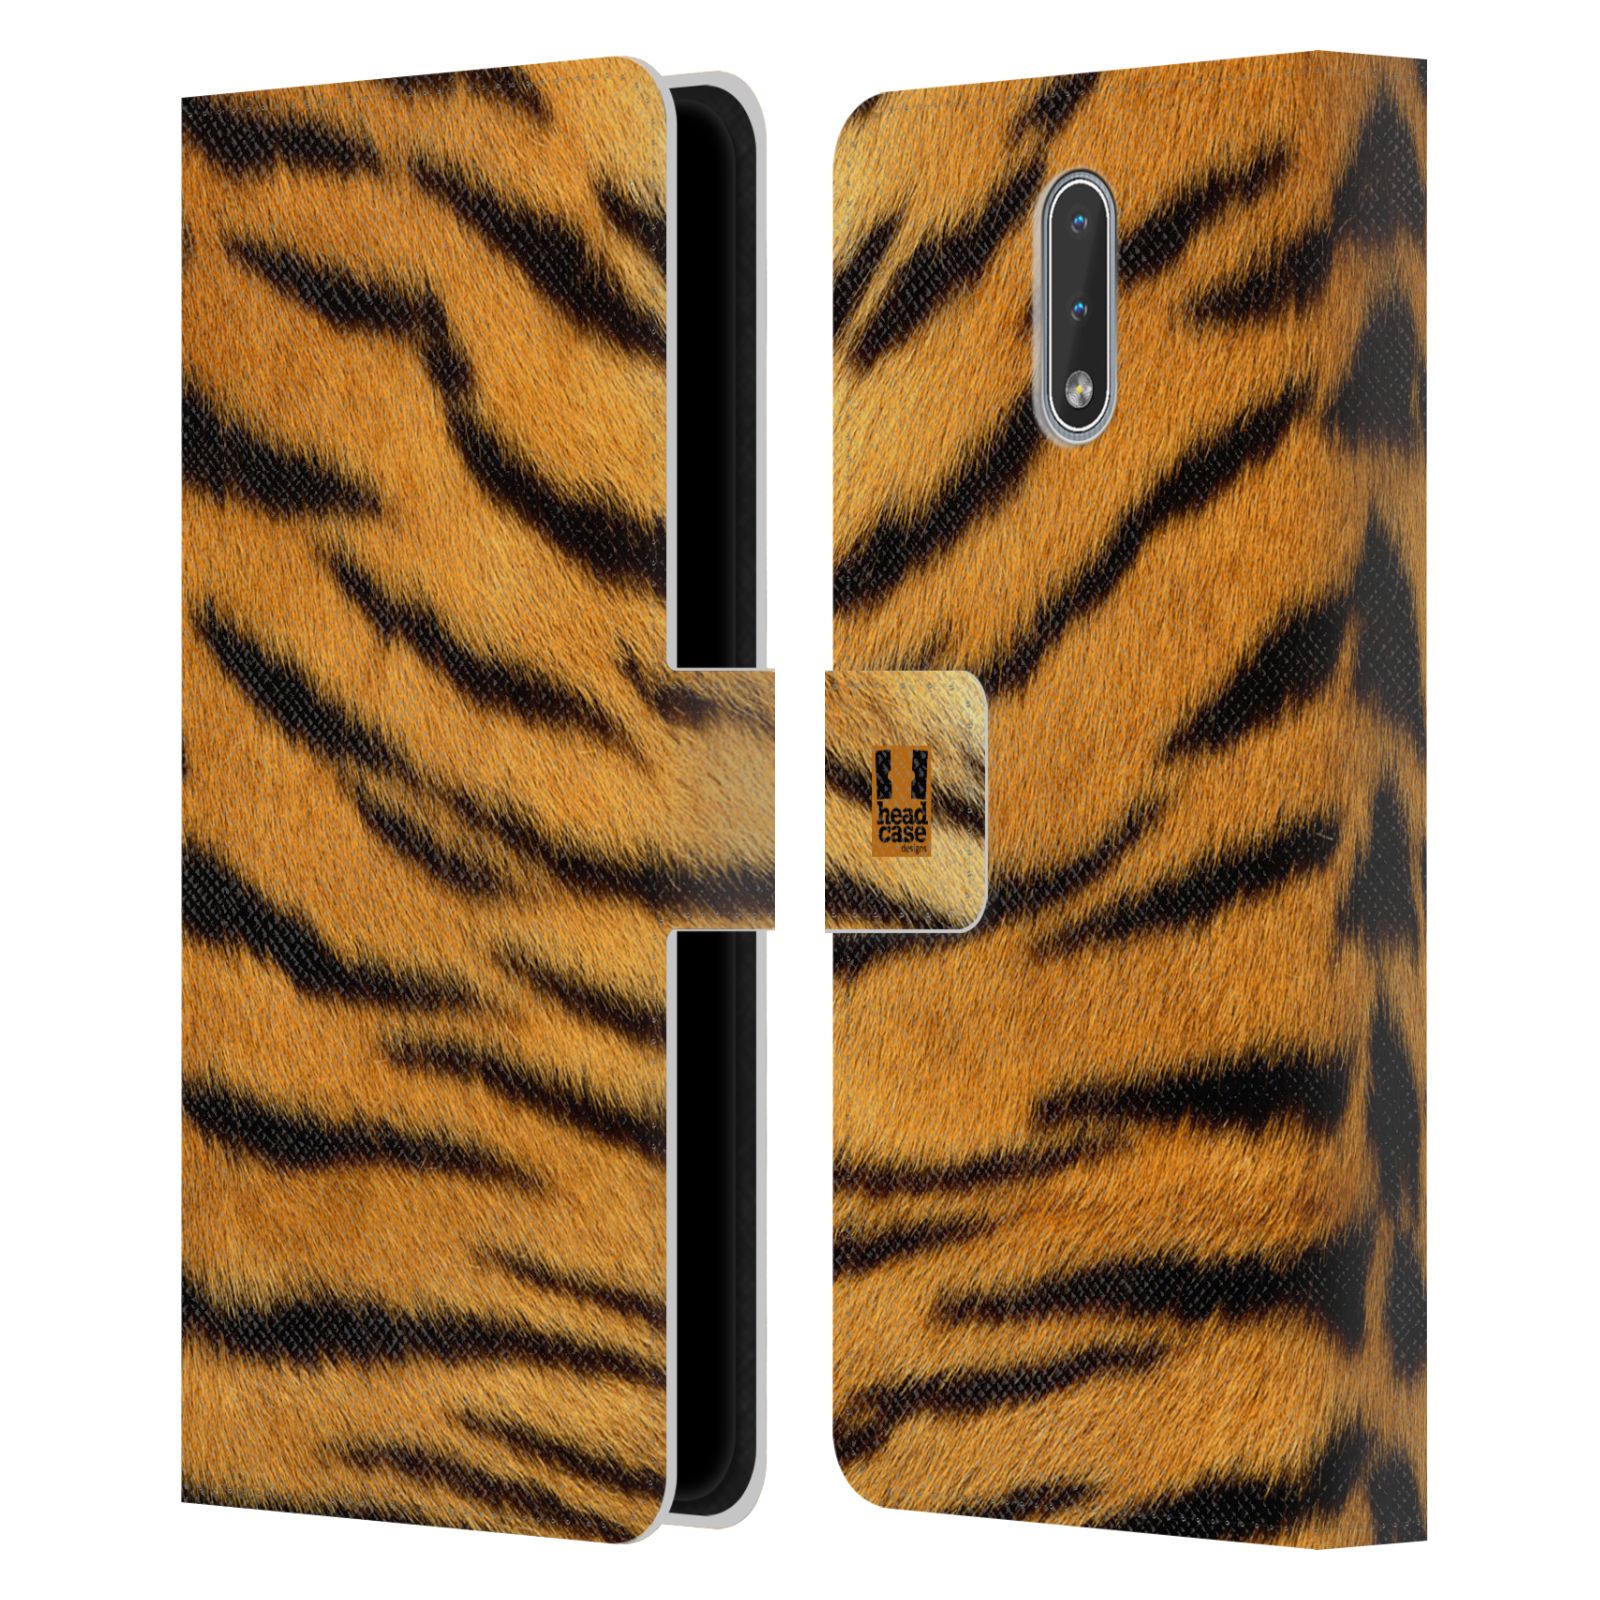 Pouzdro HEAD CASE na mobil Nokia 2.3 zvíře srst divoká kolekce tygr